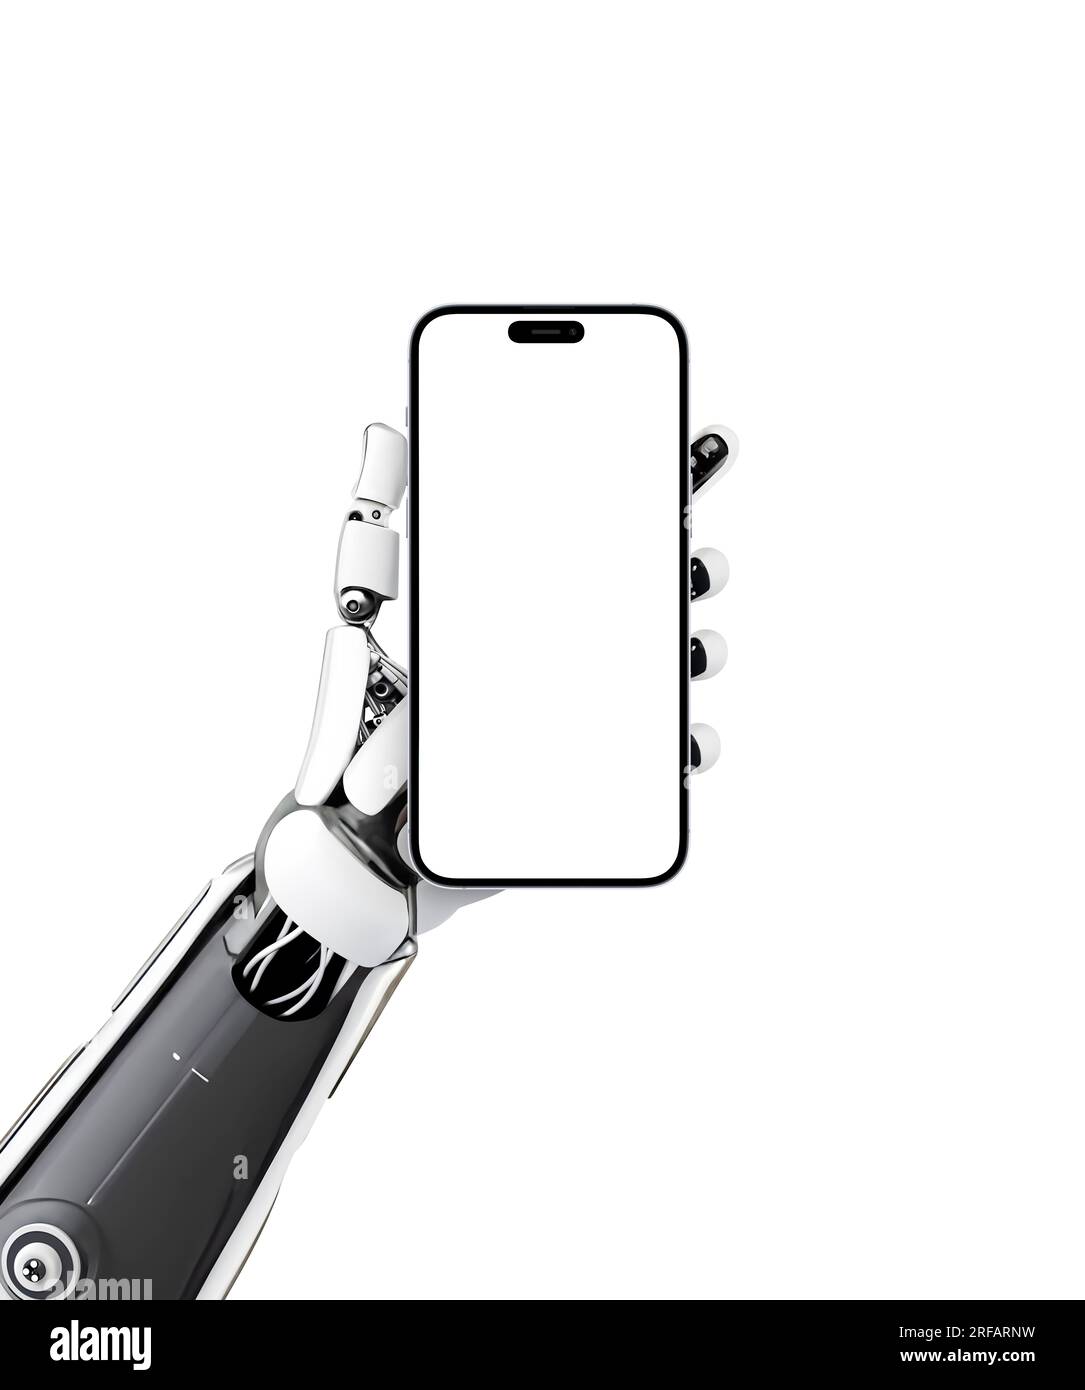 Die Roboterhand hält das Smartphone mit isoliertem Bildschirm für Modelle und App-Präsentationen. Künstliche Intelligenz, Kybernetik, teknologisches Konzept Stockfoto